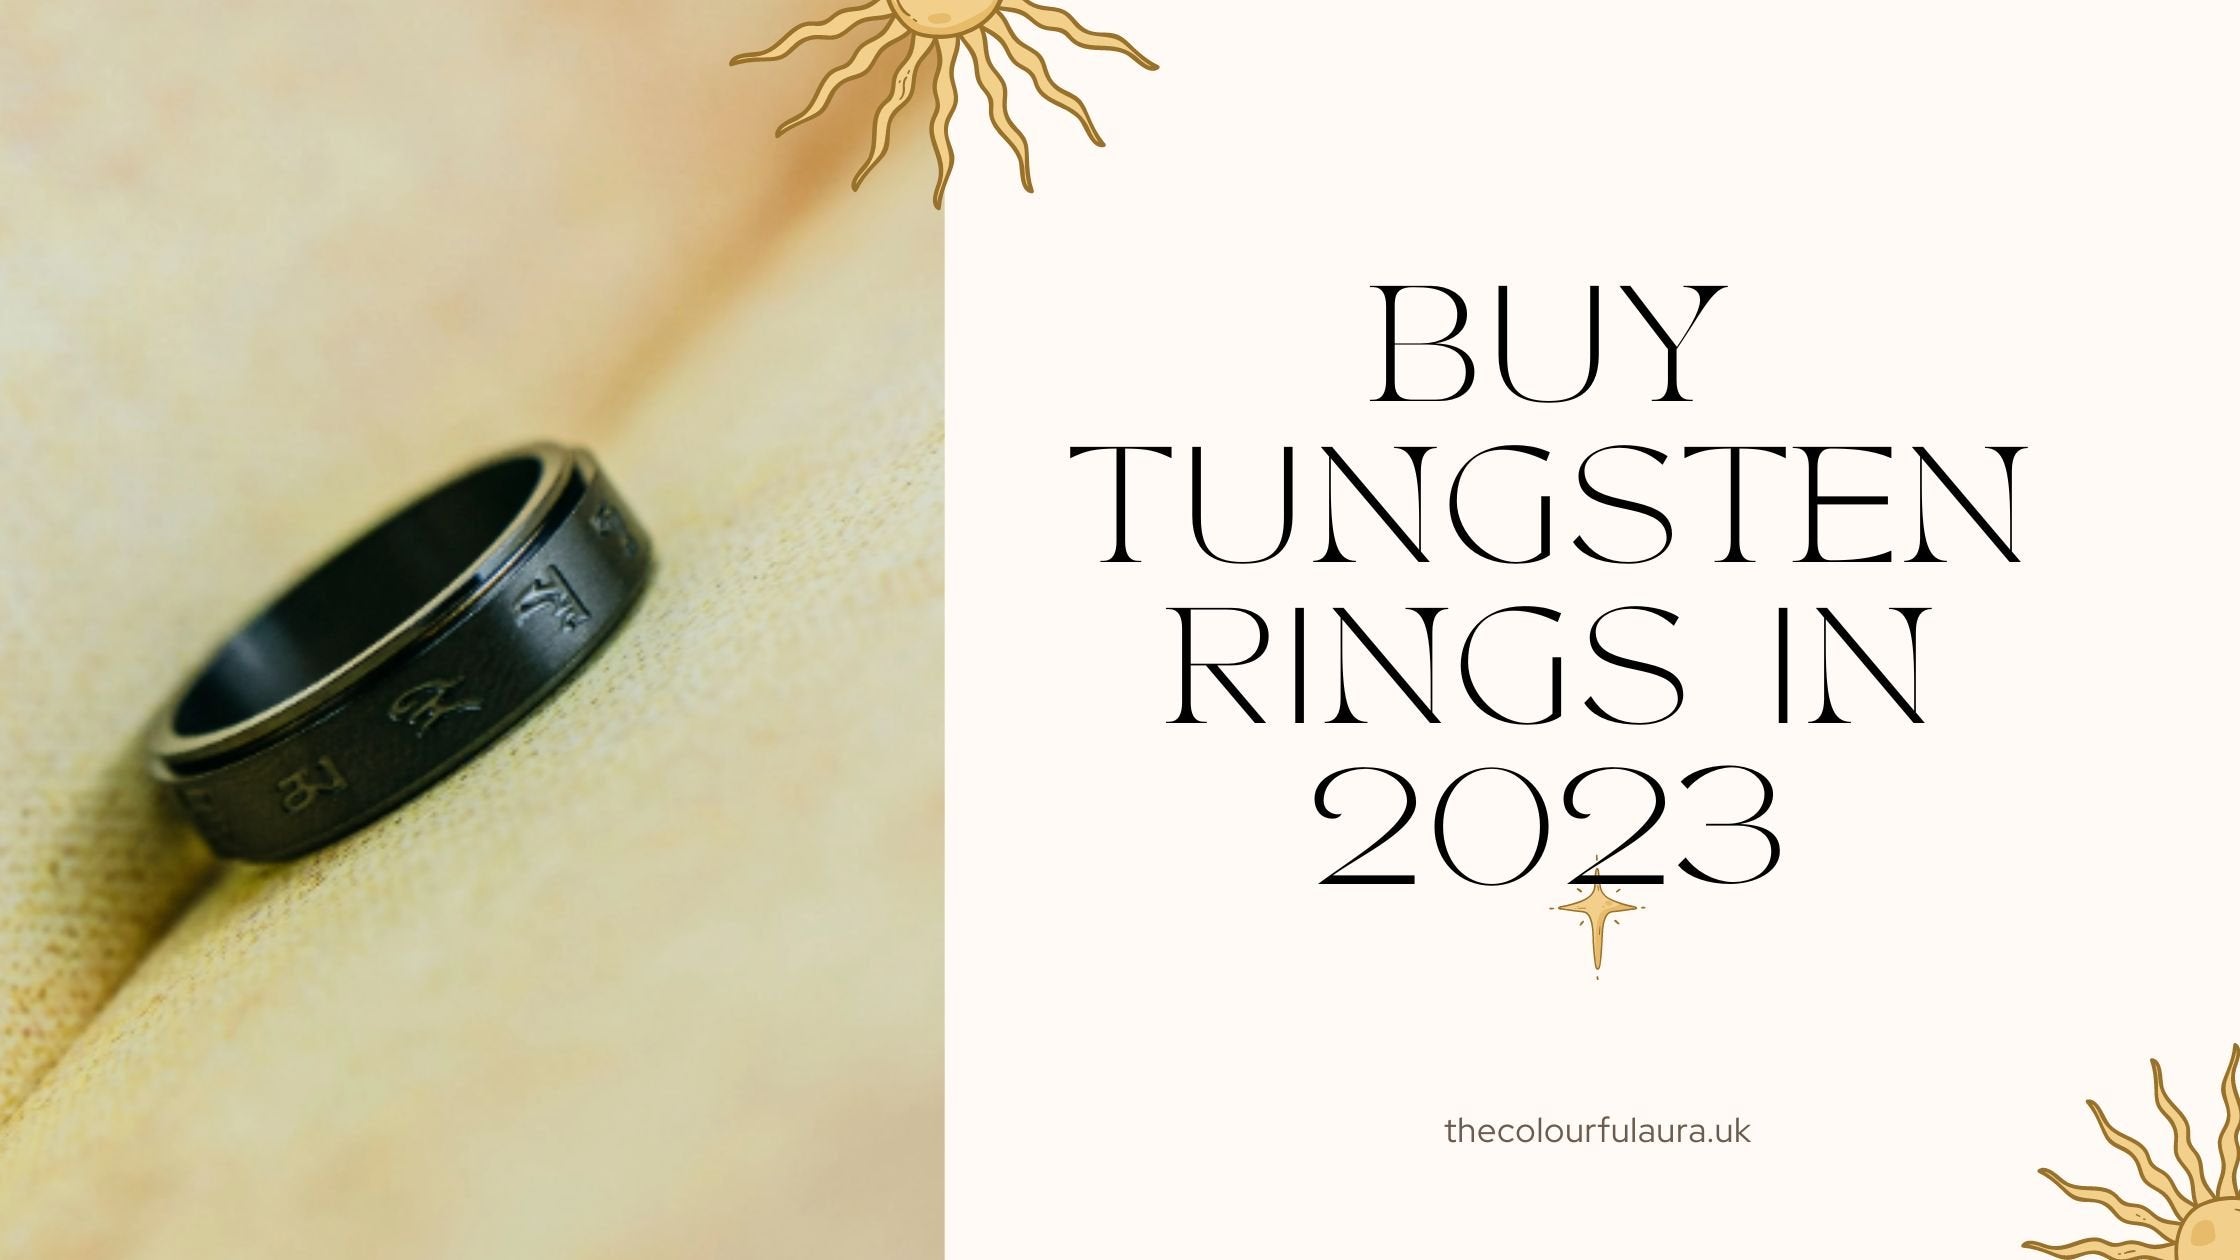 Buy tungsten rings in 2023